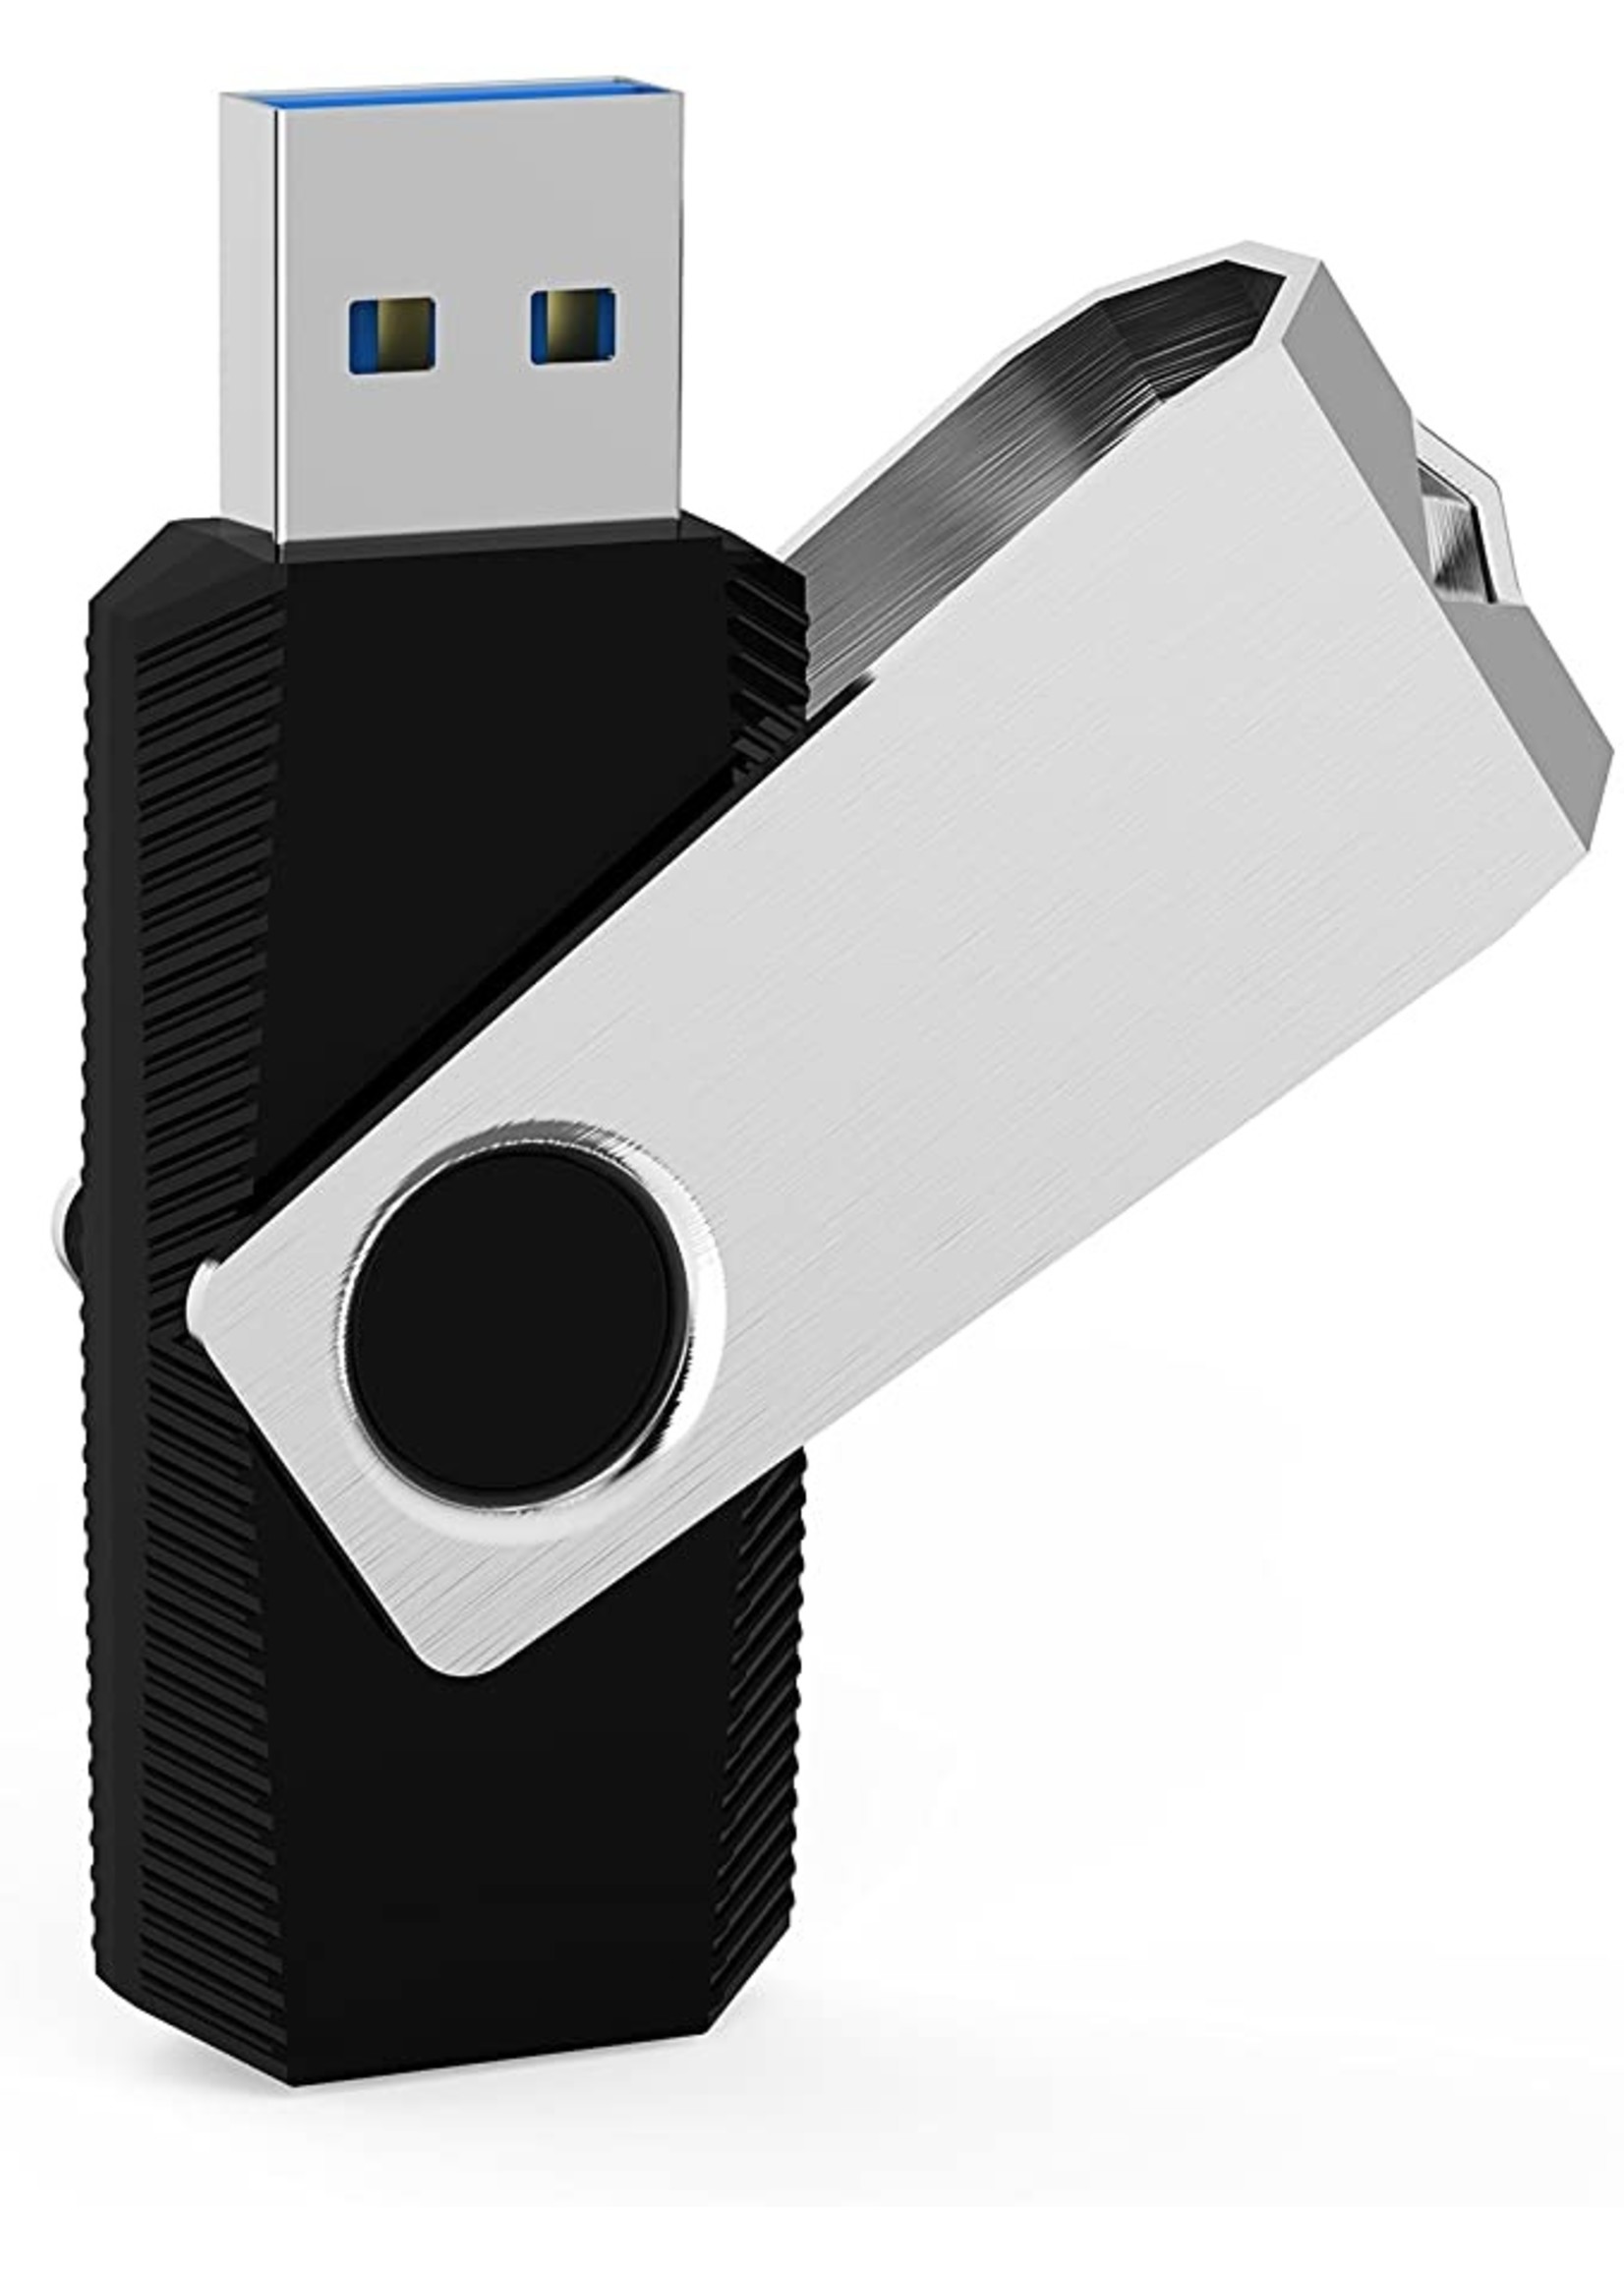 32GB USB 3.0 Flash Drive Black